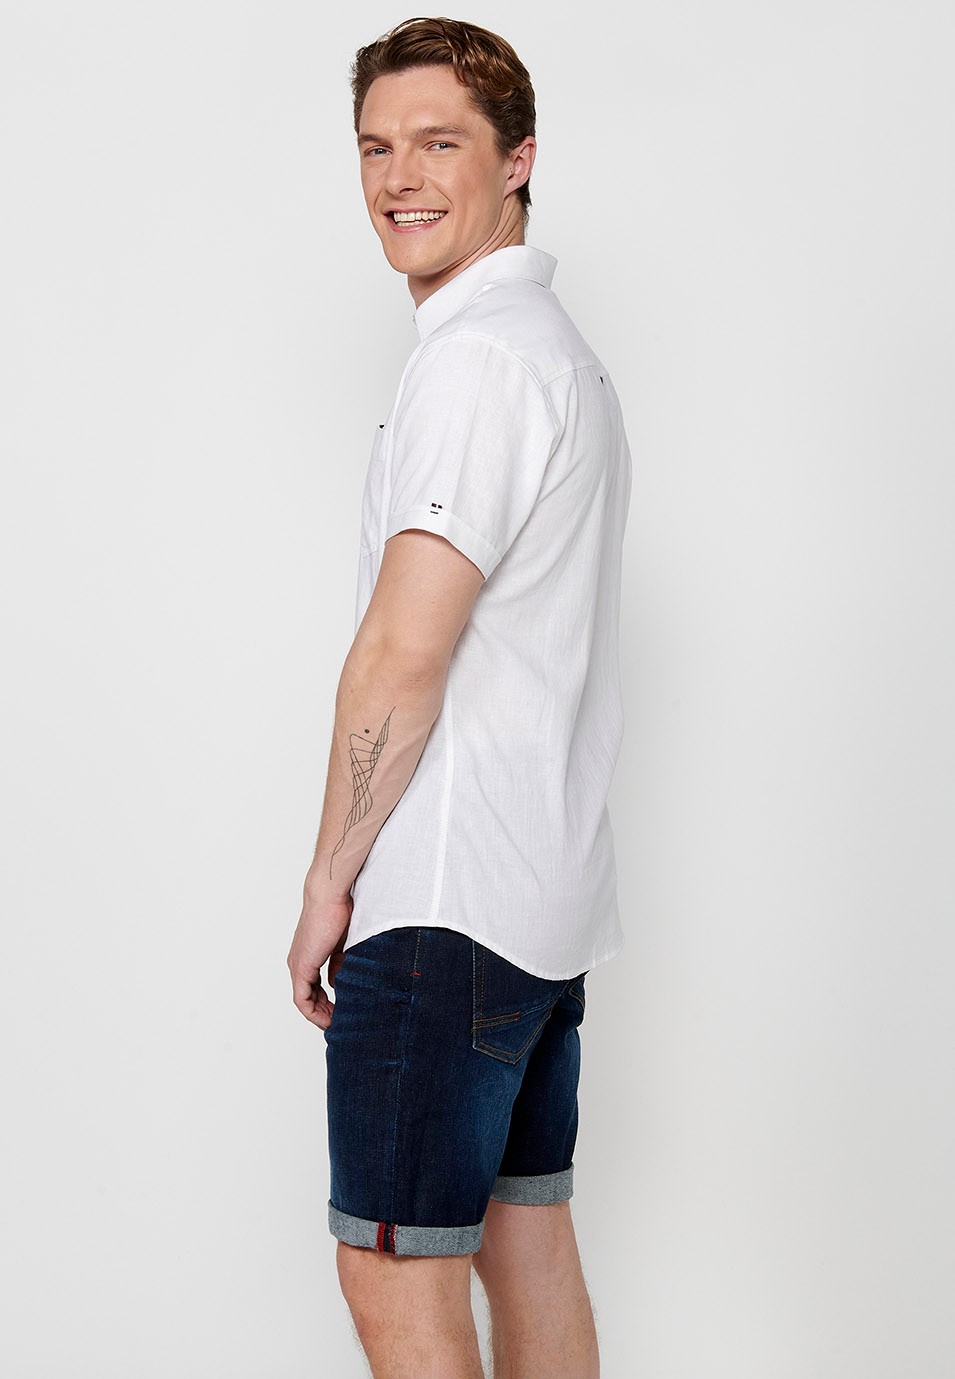 Camisa Manga Corta de Lino, color blanco, para hombre